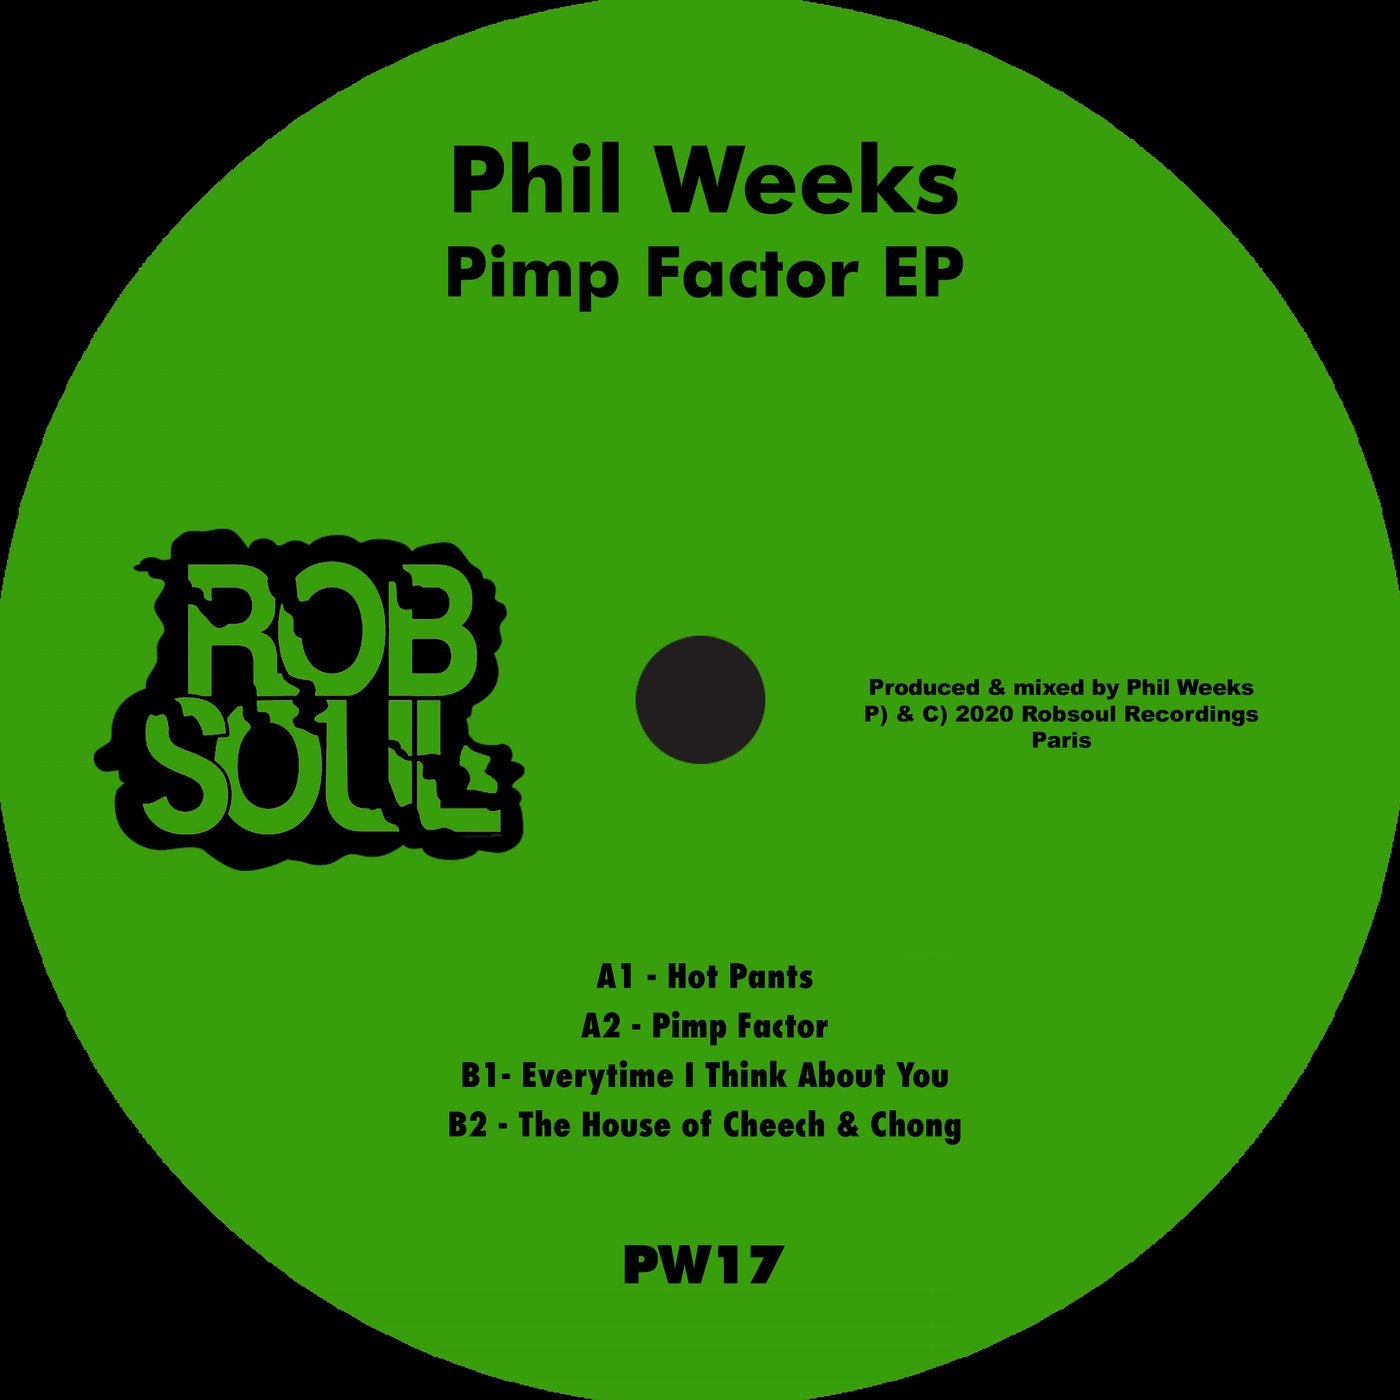 Pimp Factor EP